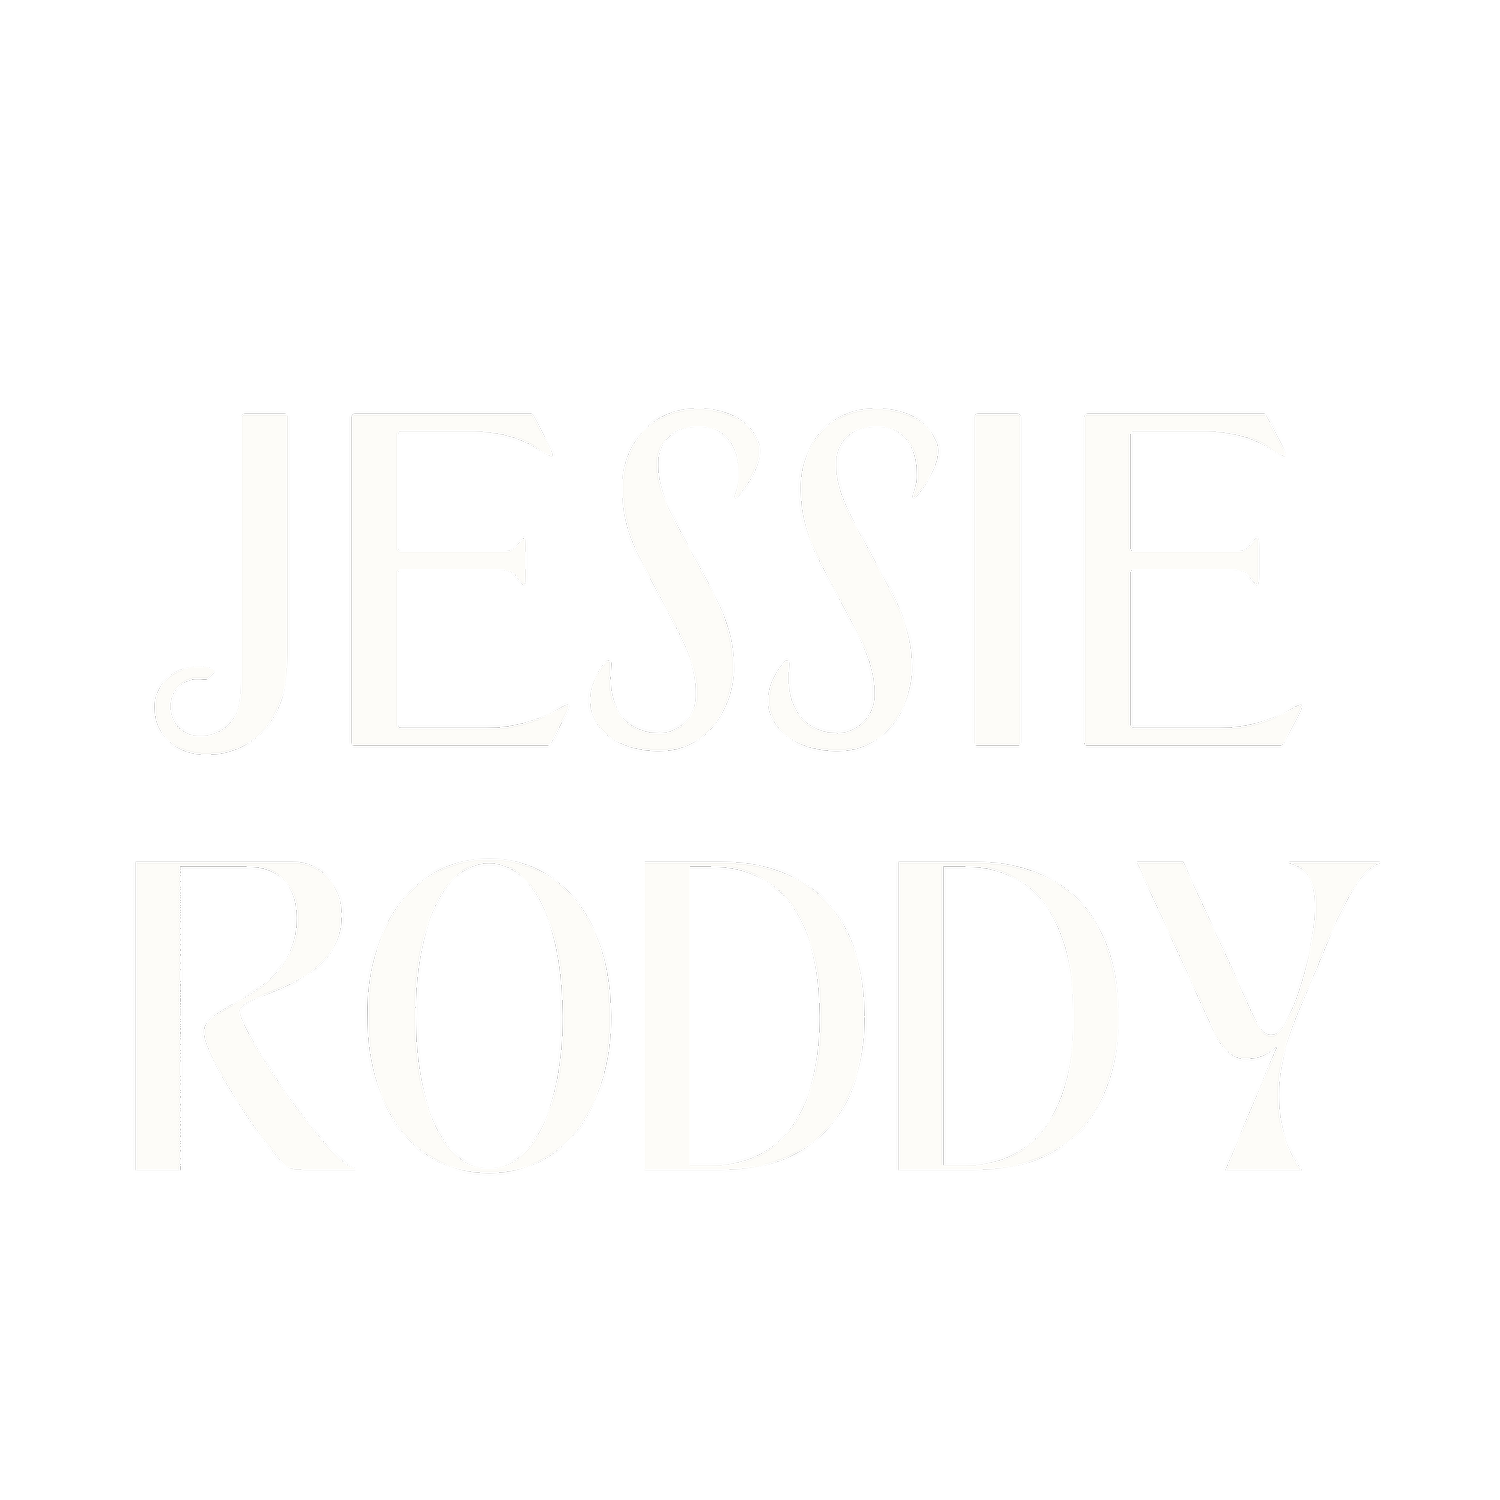 Jessie Roddy